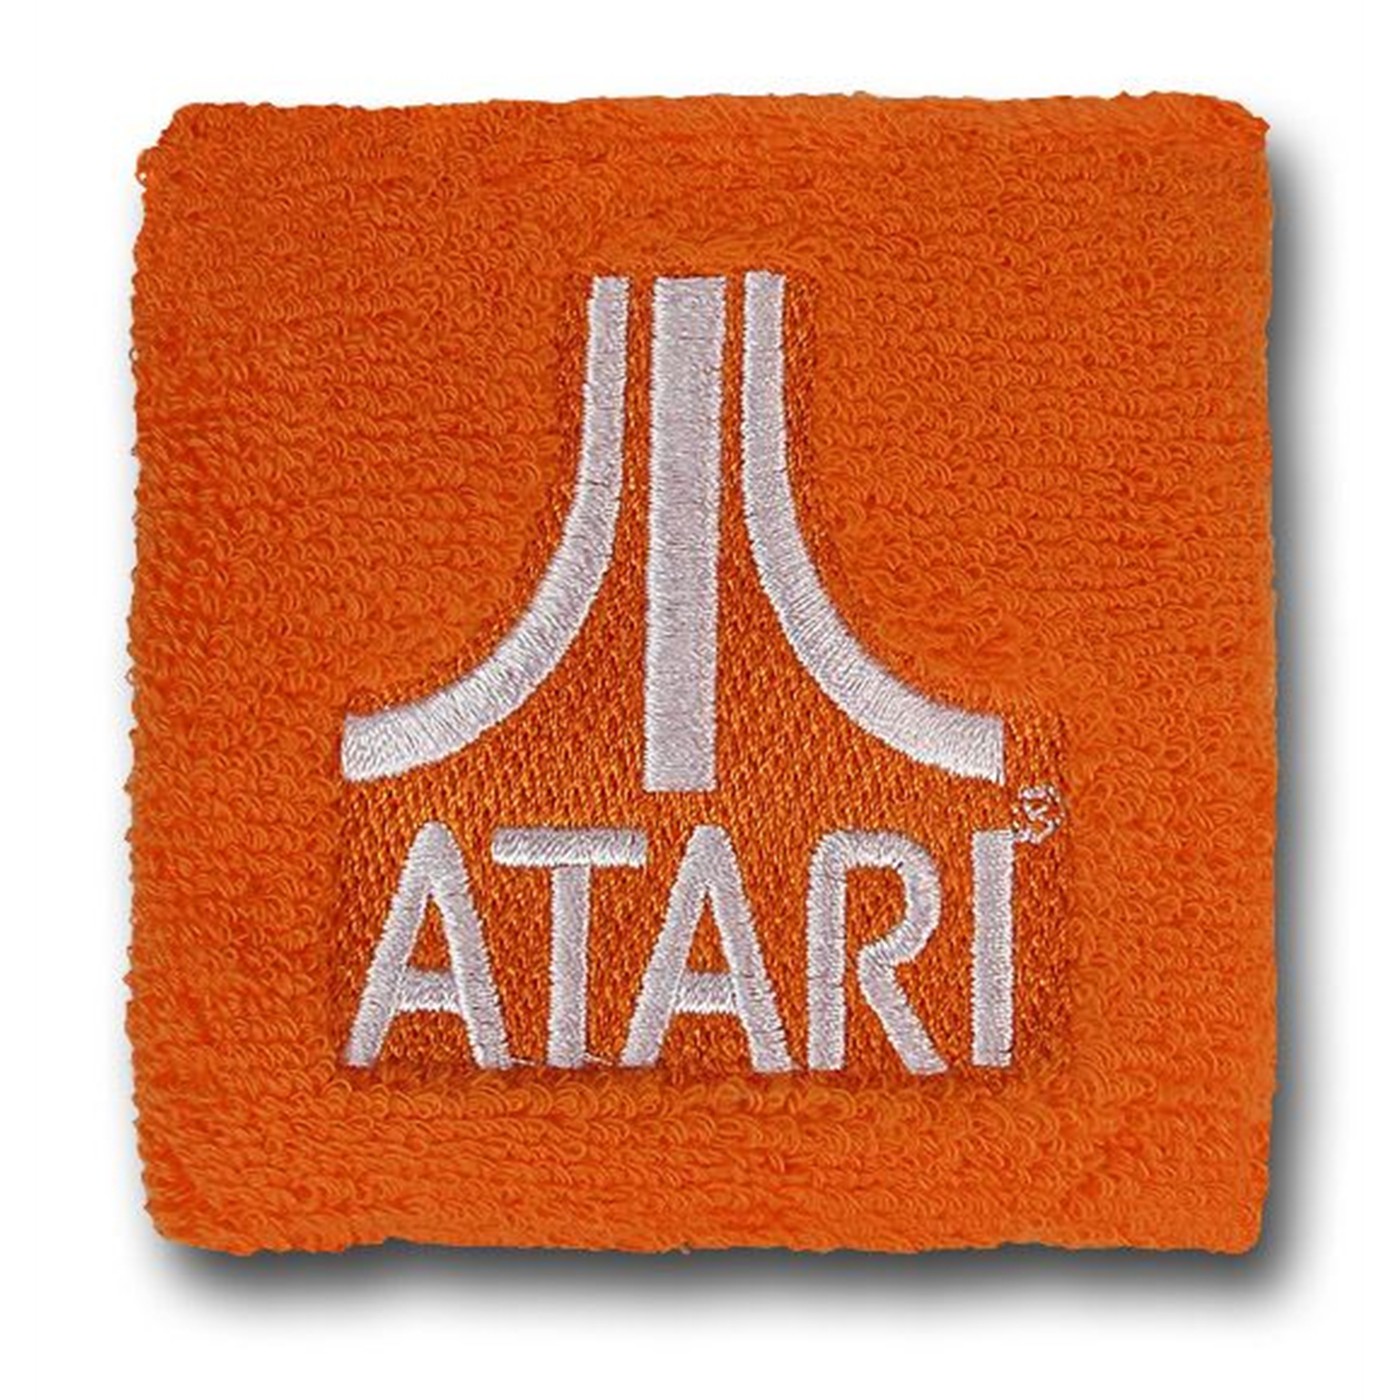 Atari Terrycloth Wristband